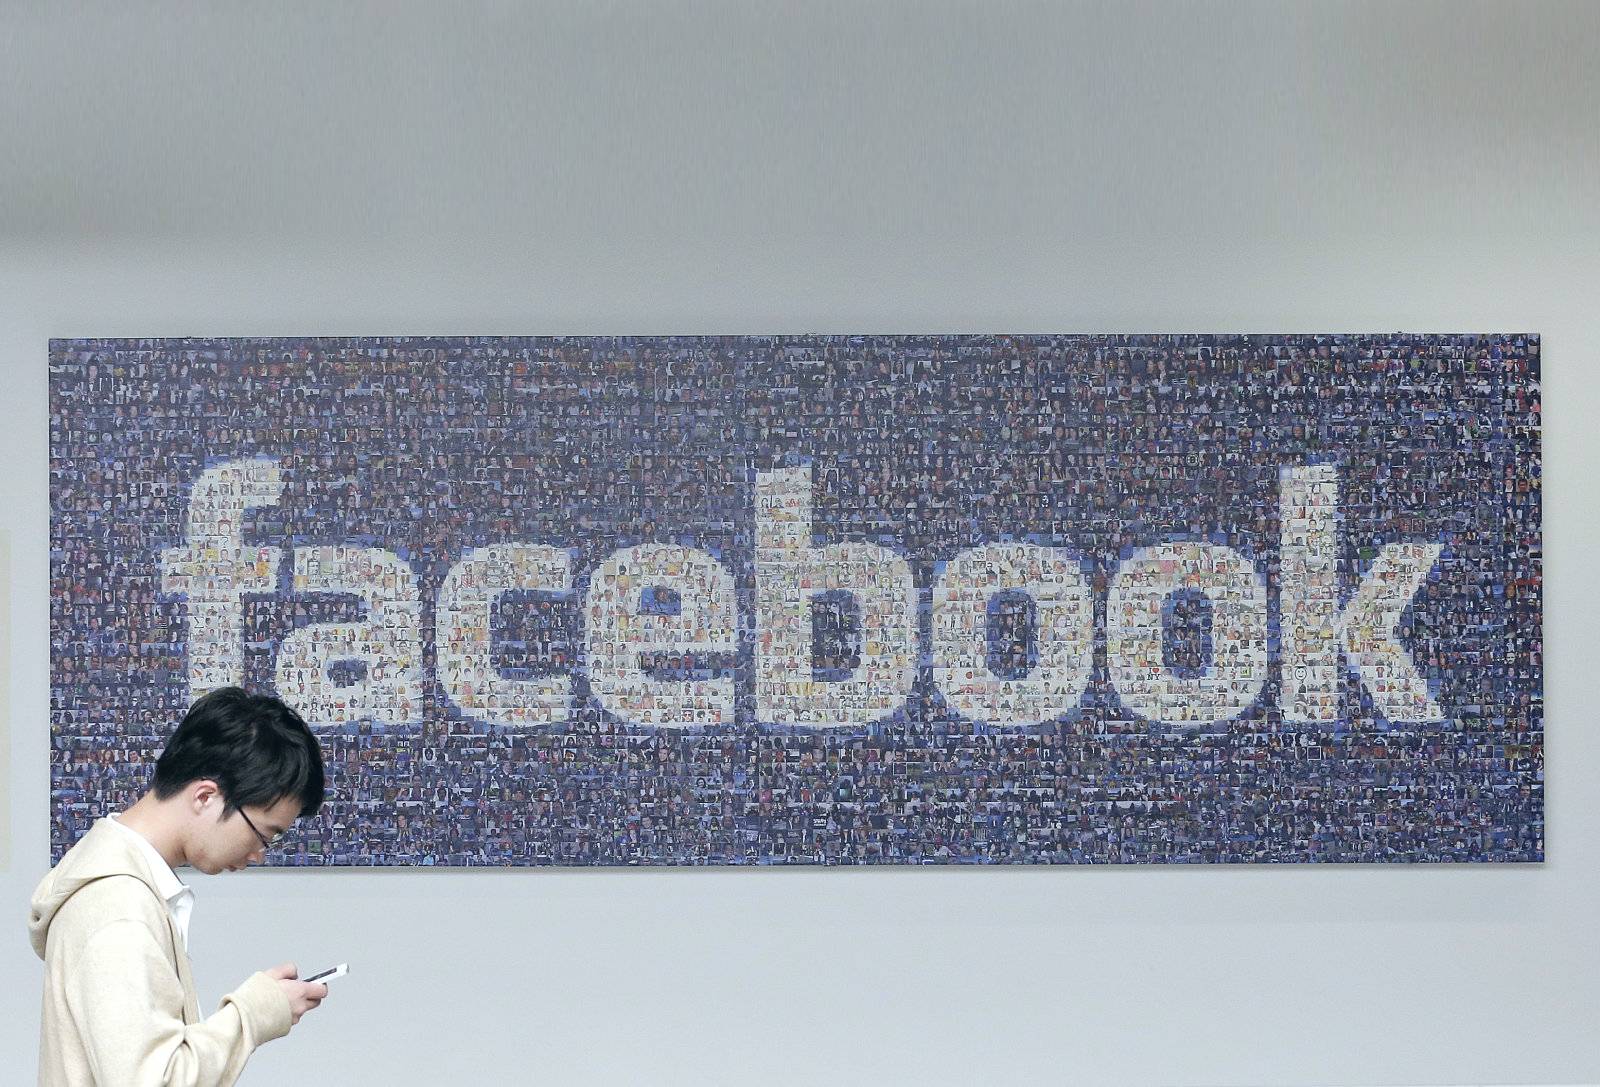 Facebook đang lên kế hoạch cho dịch vụ game đám mây riêng của mình